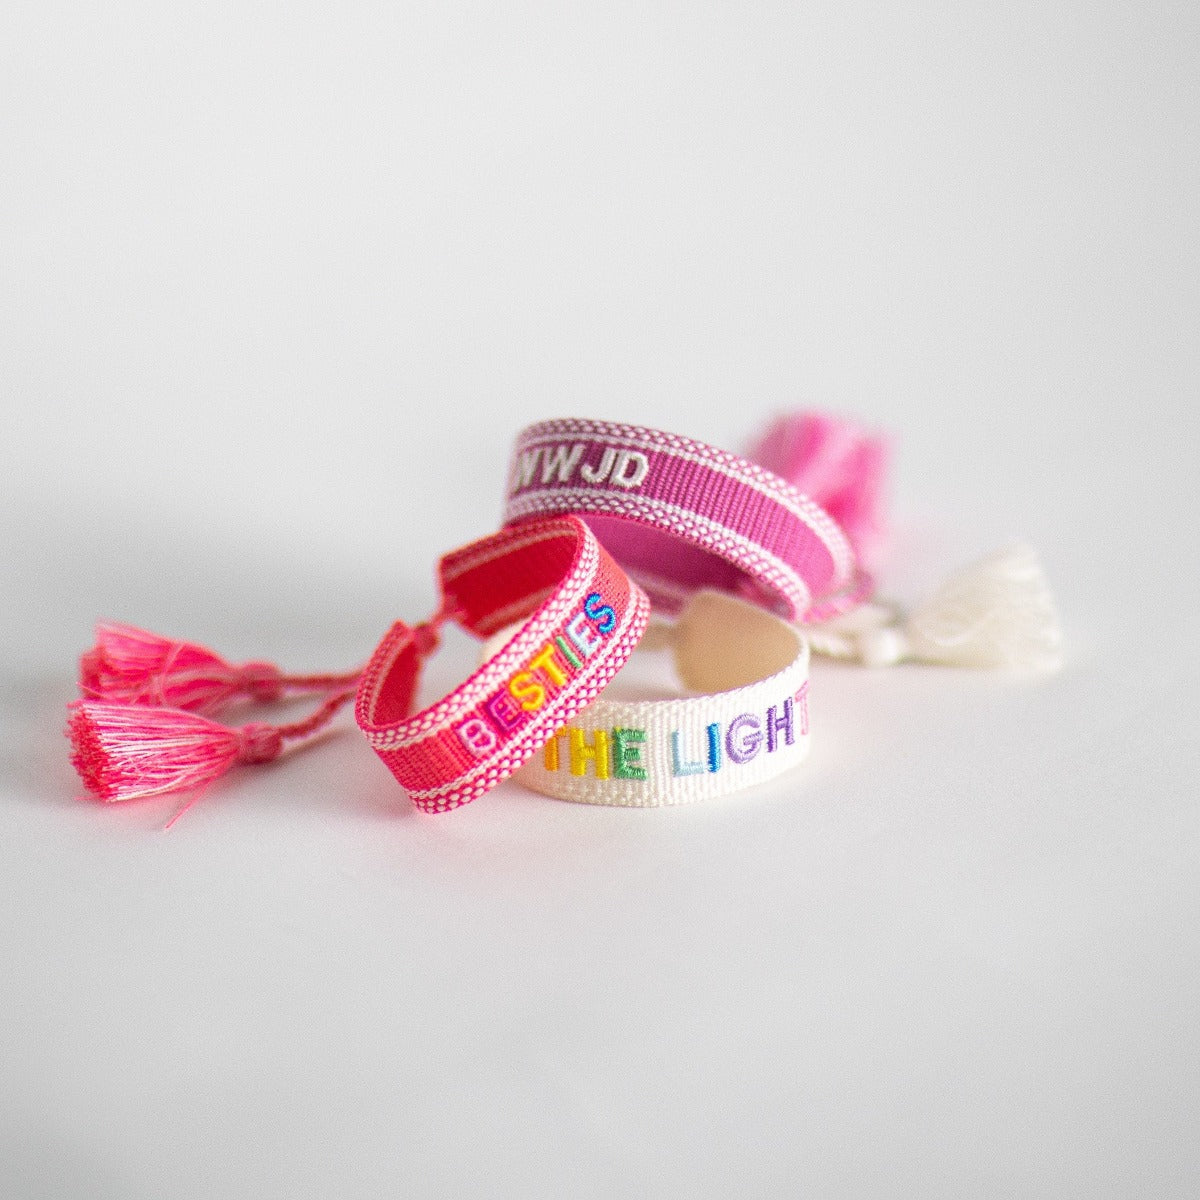 Friendship bracelet - Embroidered bracelet - wwjd bracelet- tassel bracelet - bachelorette party - birthday gift - baby shower gift - mama